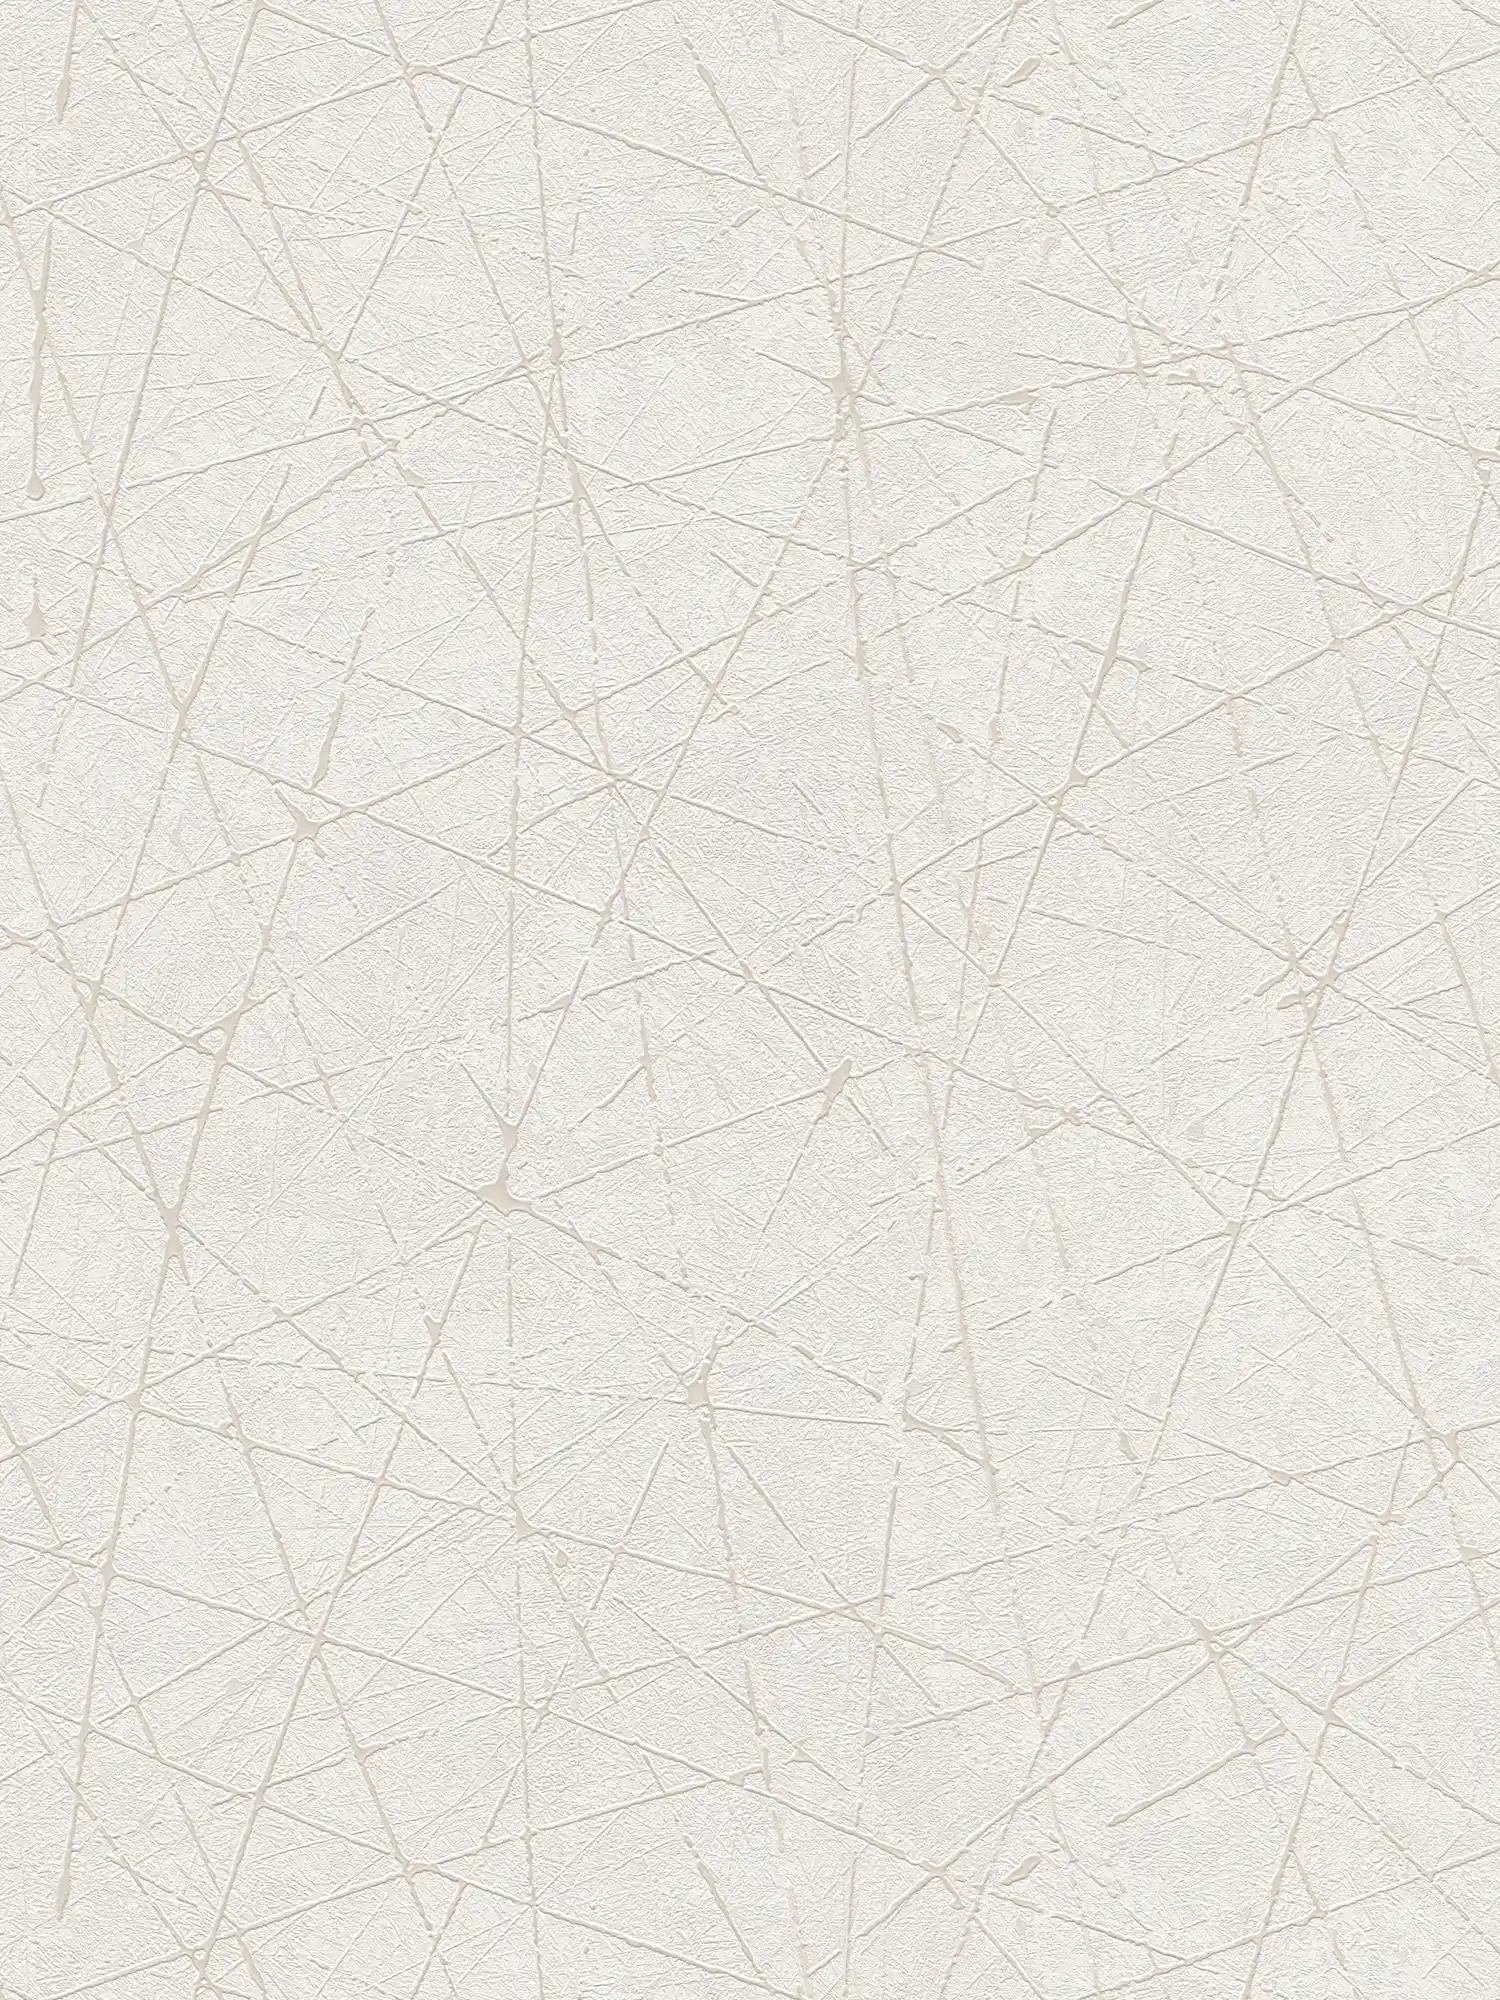         Papel pintado no tejido con diseño gráfico de líneas - blanco, crema, plata
    